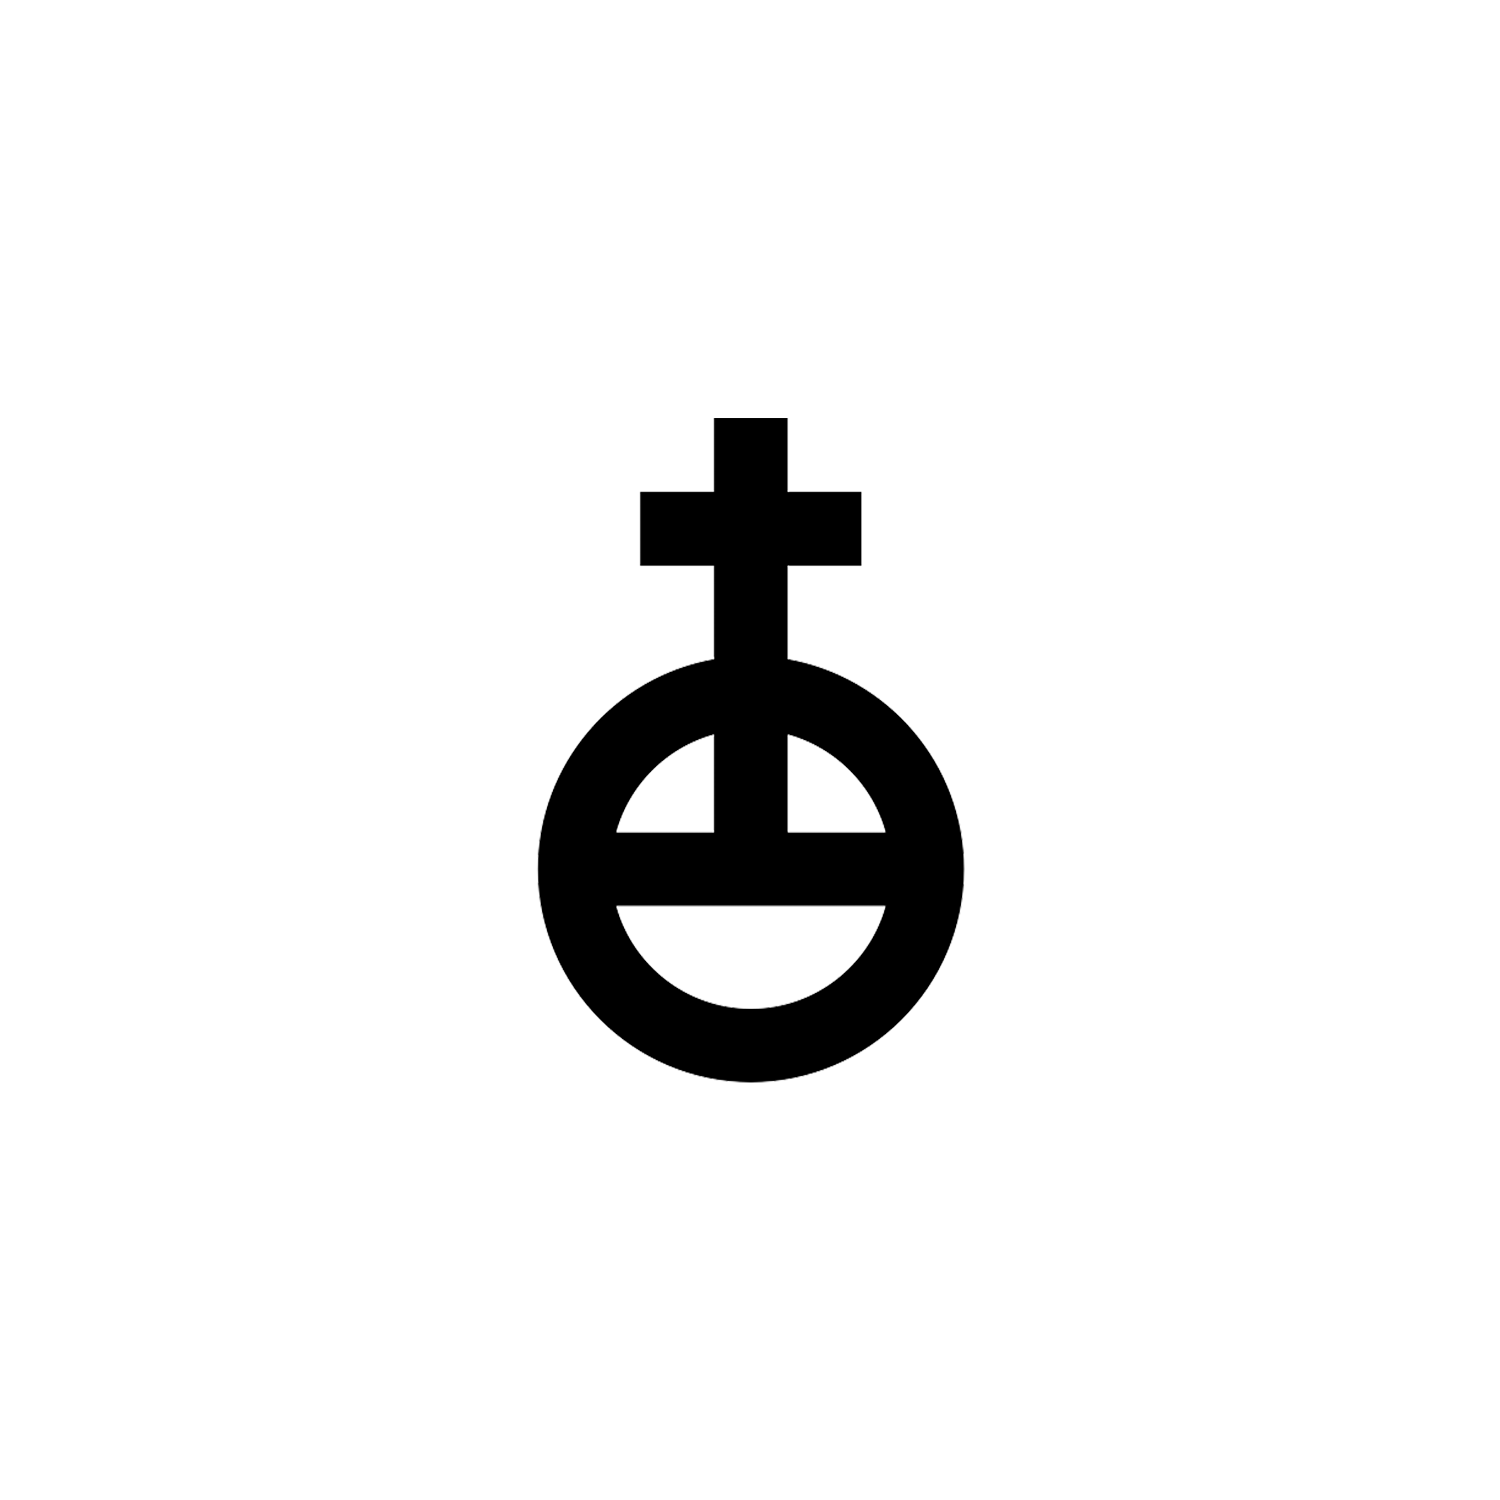 globus-cruciger-symbol